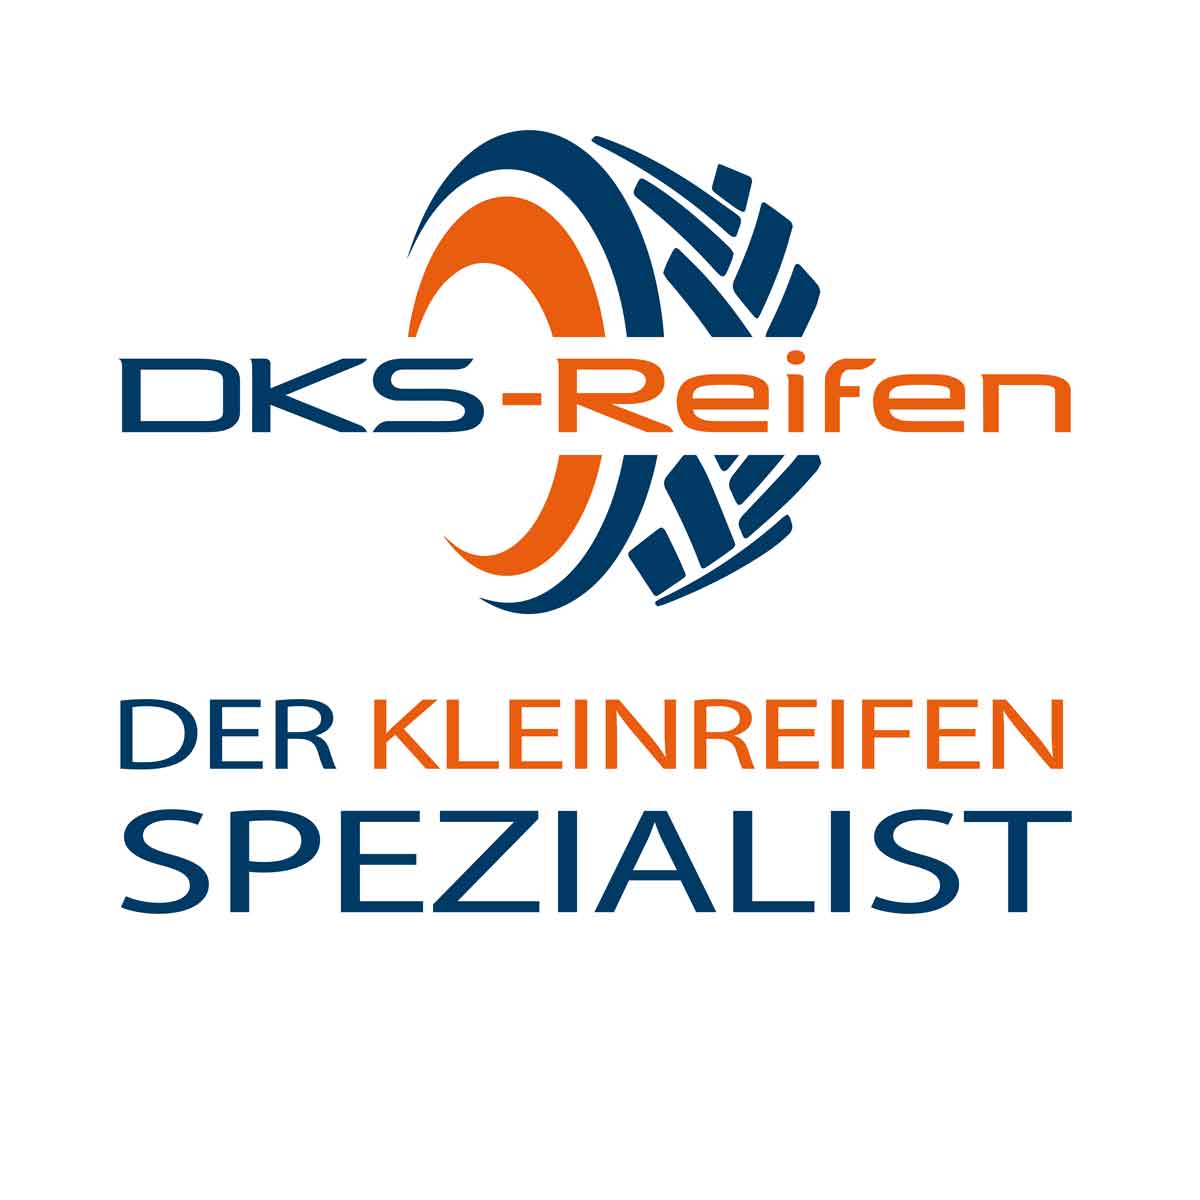 DKS Reifen, der Kleinreifenspezialist